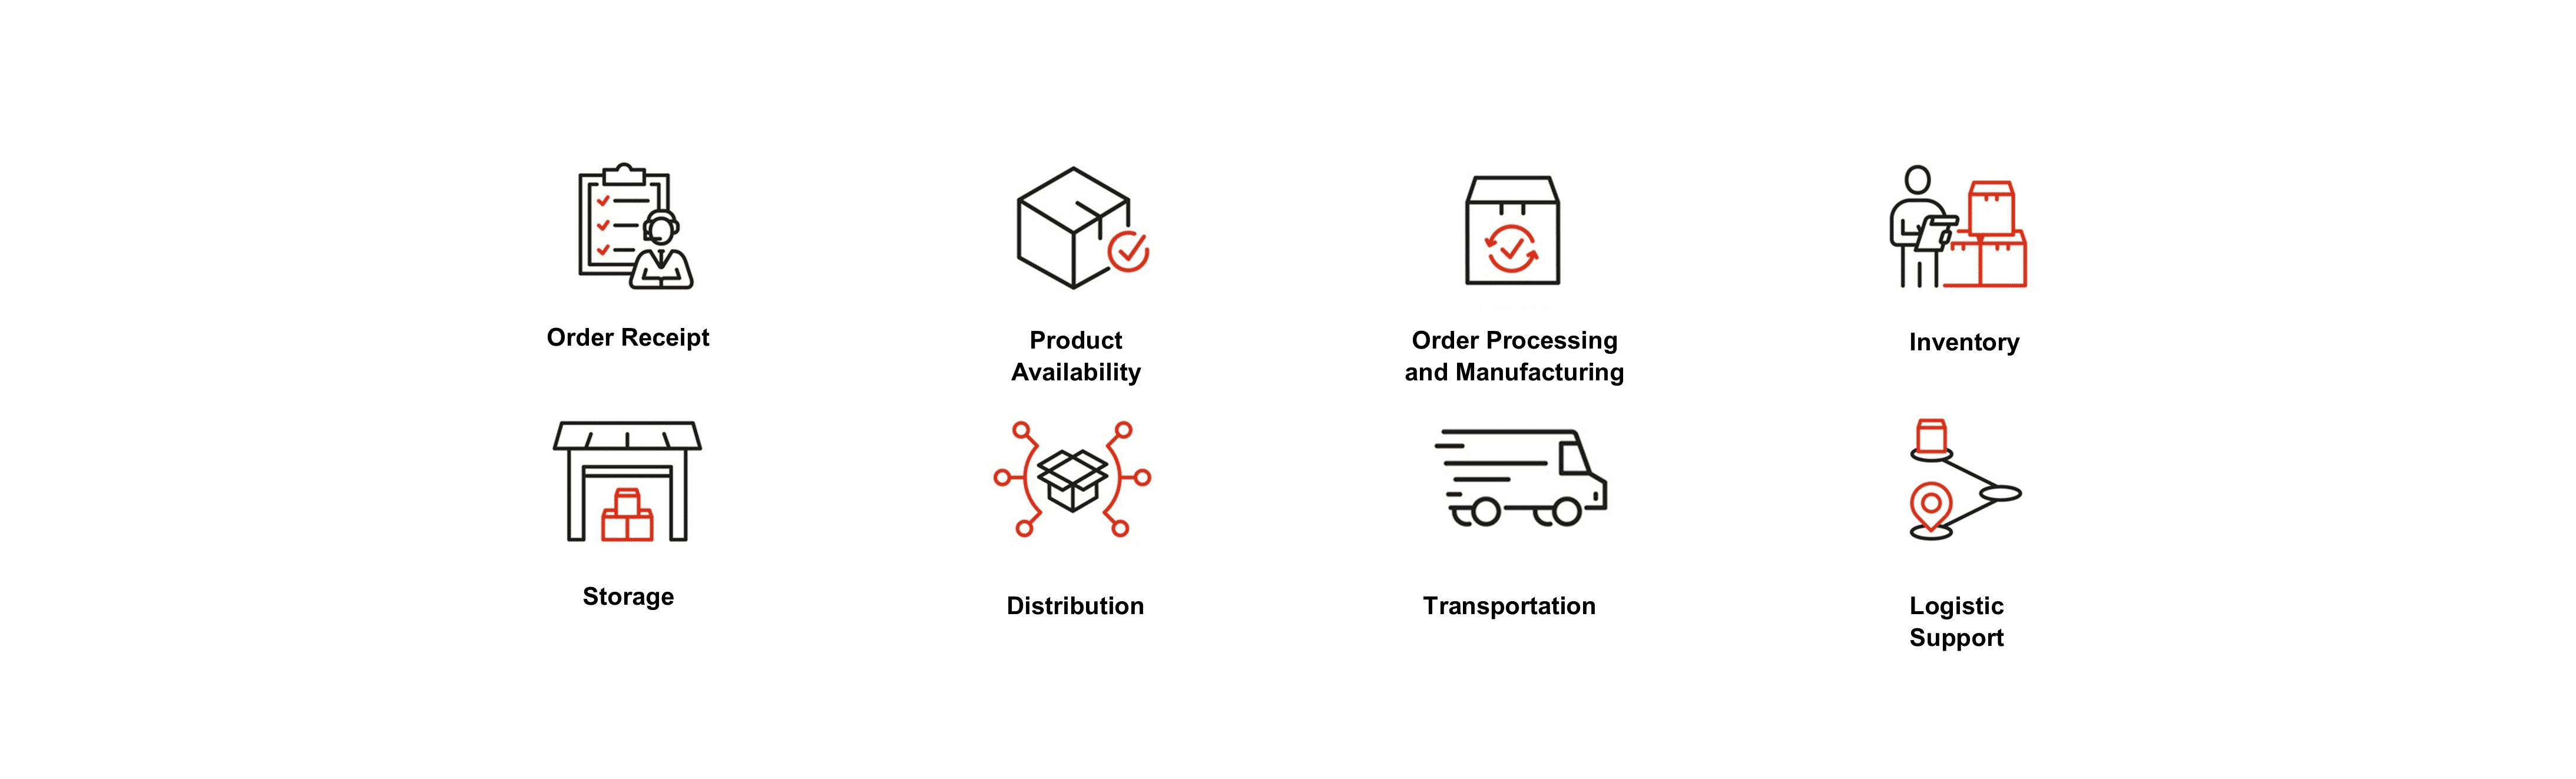 Packaging & Fulfillment - Converting Capabilities